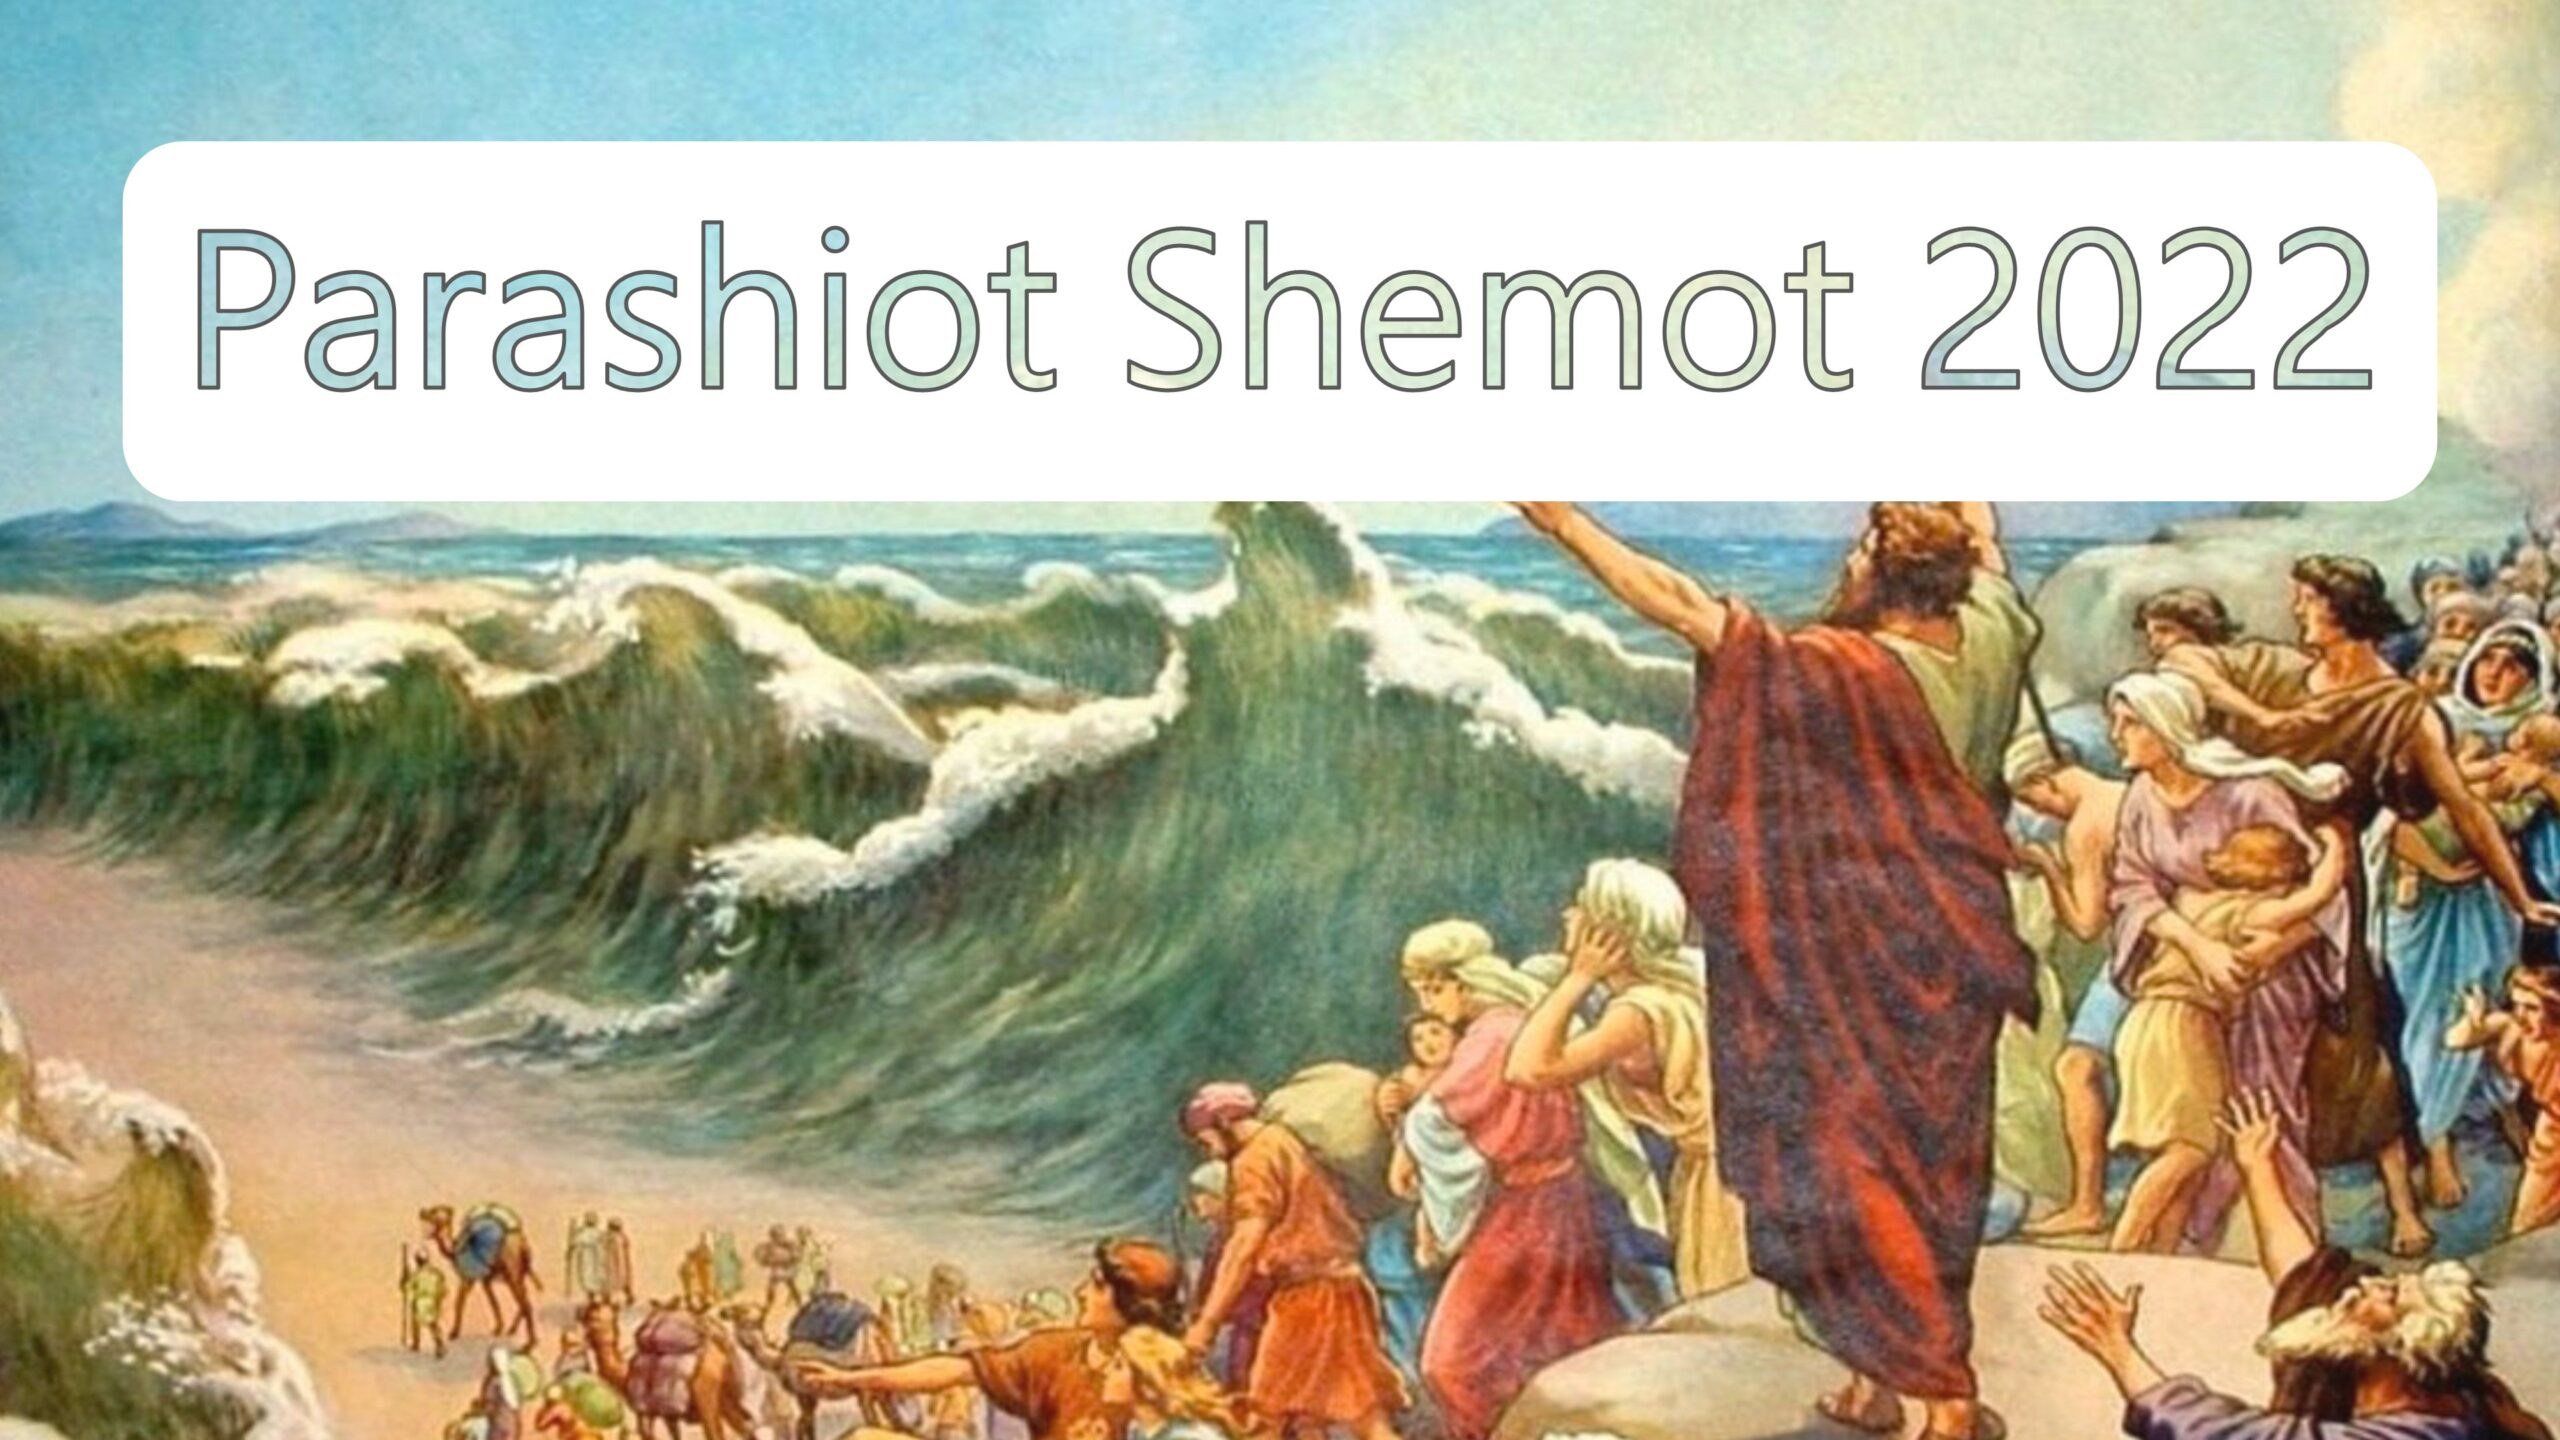 Parashiot Shemot 2022